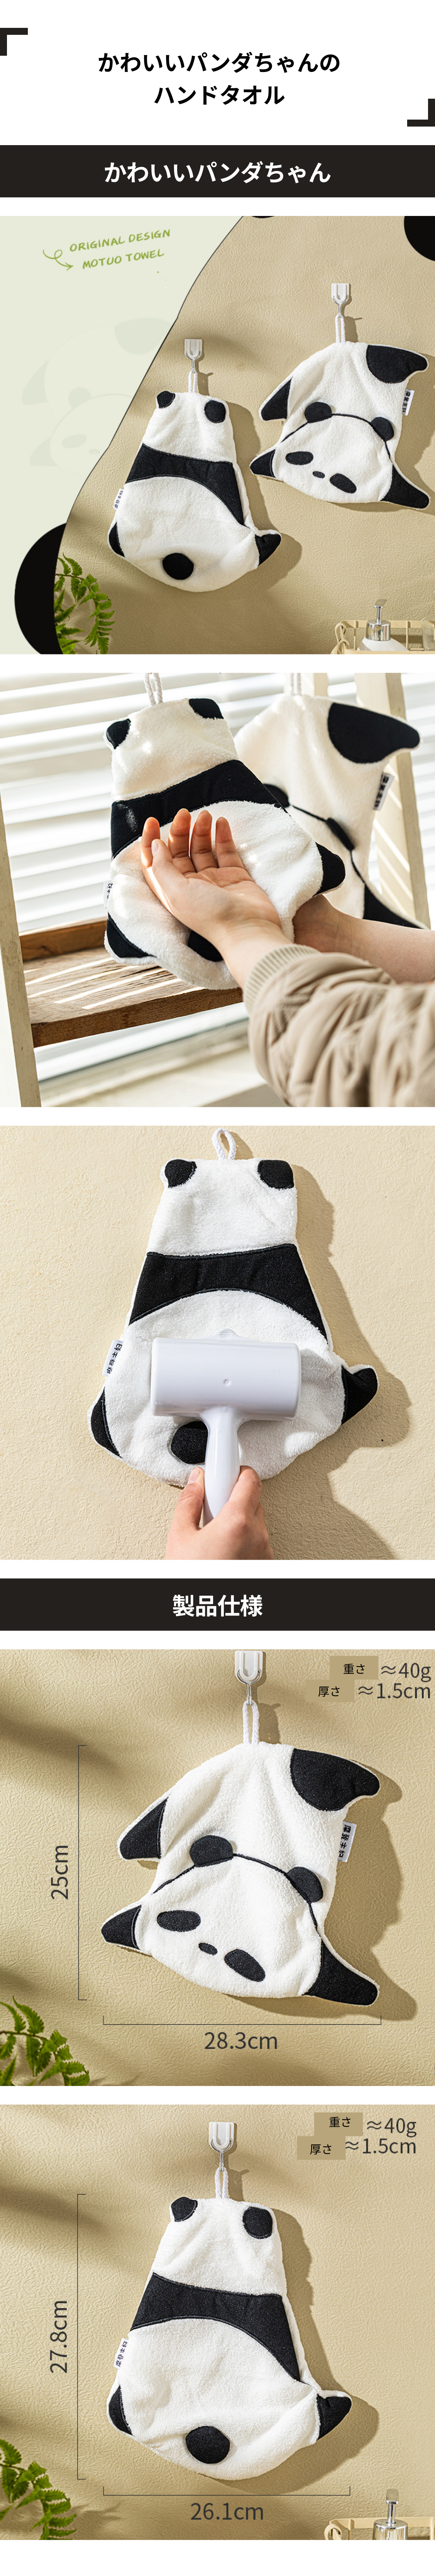 熊猫擦手巾.png